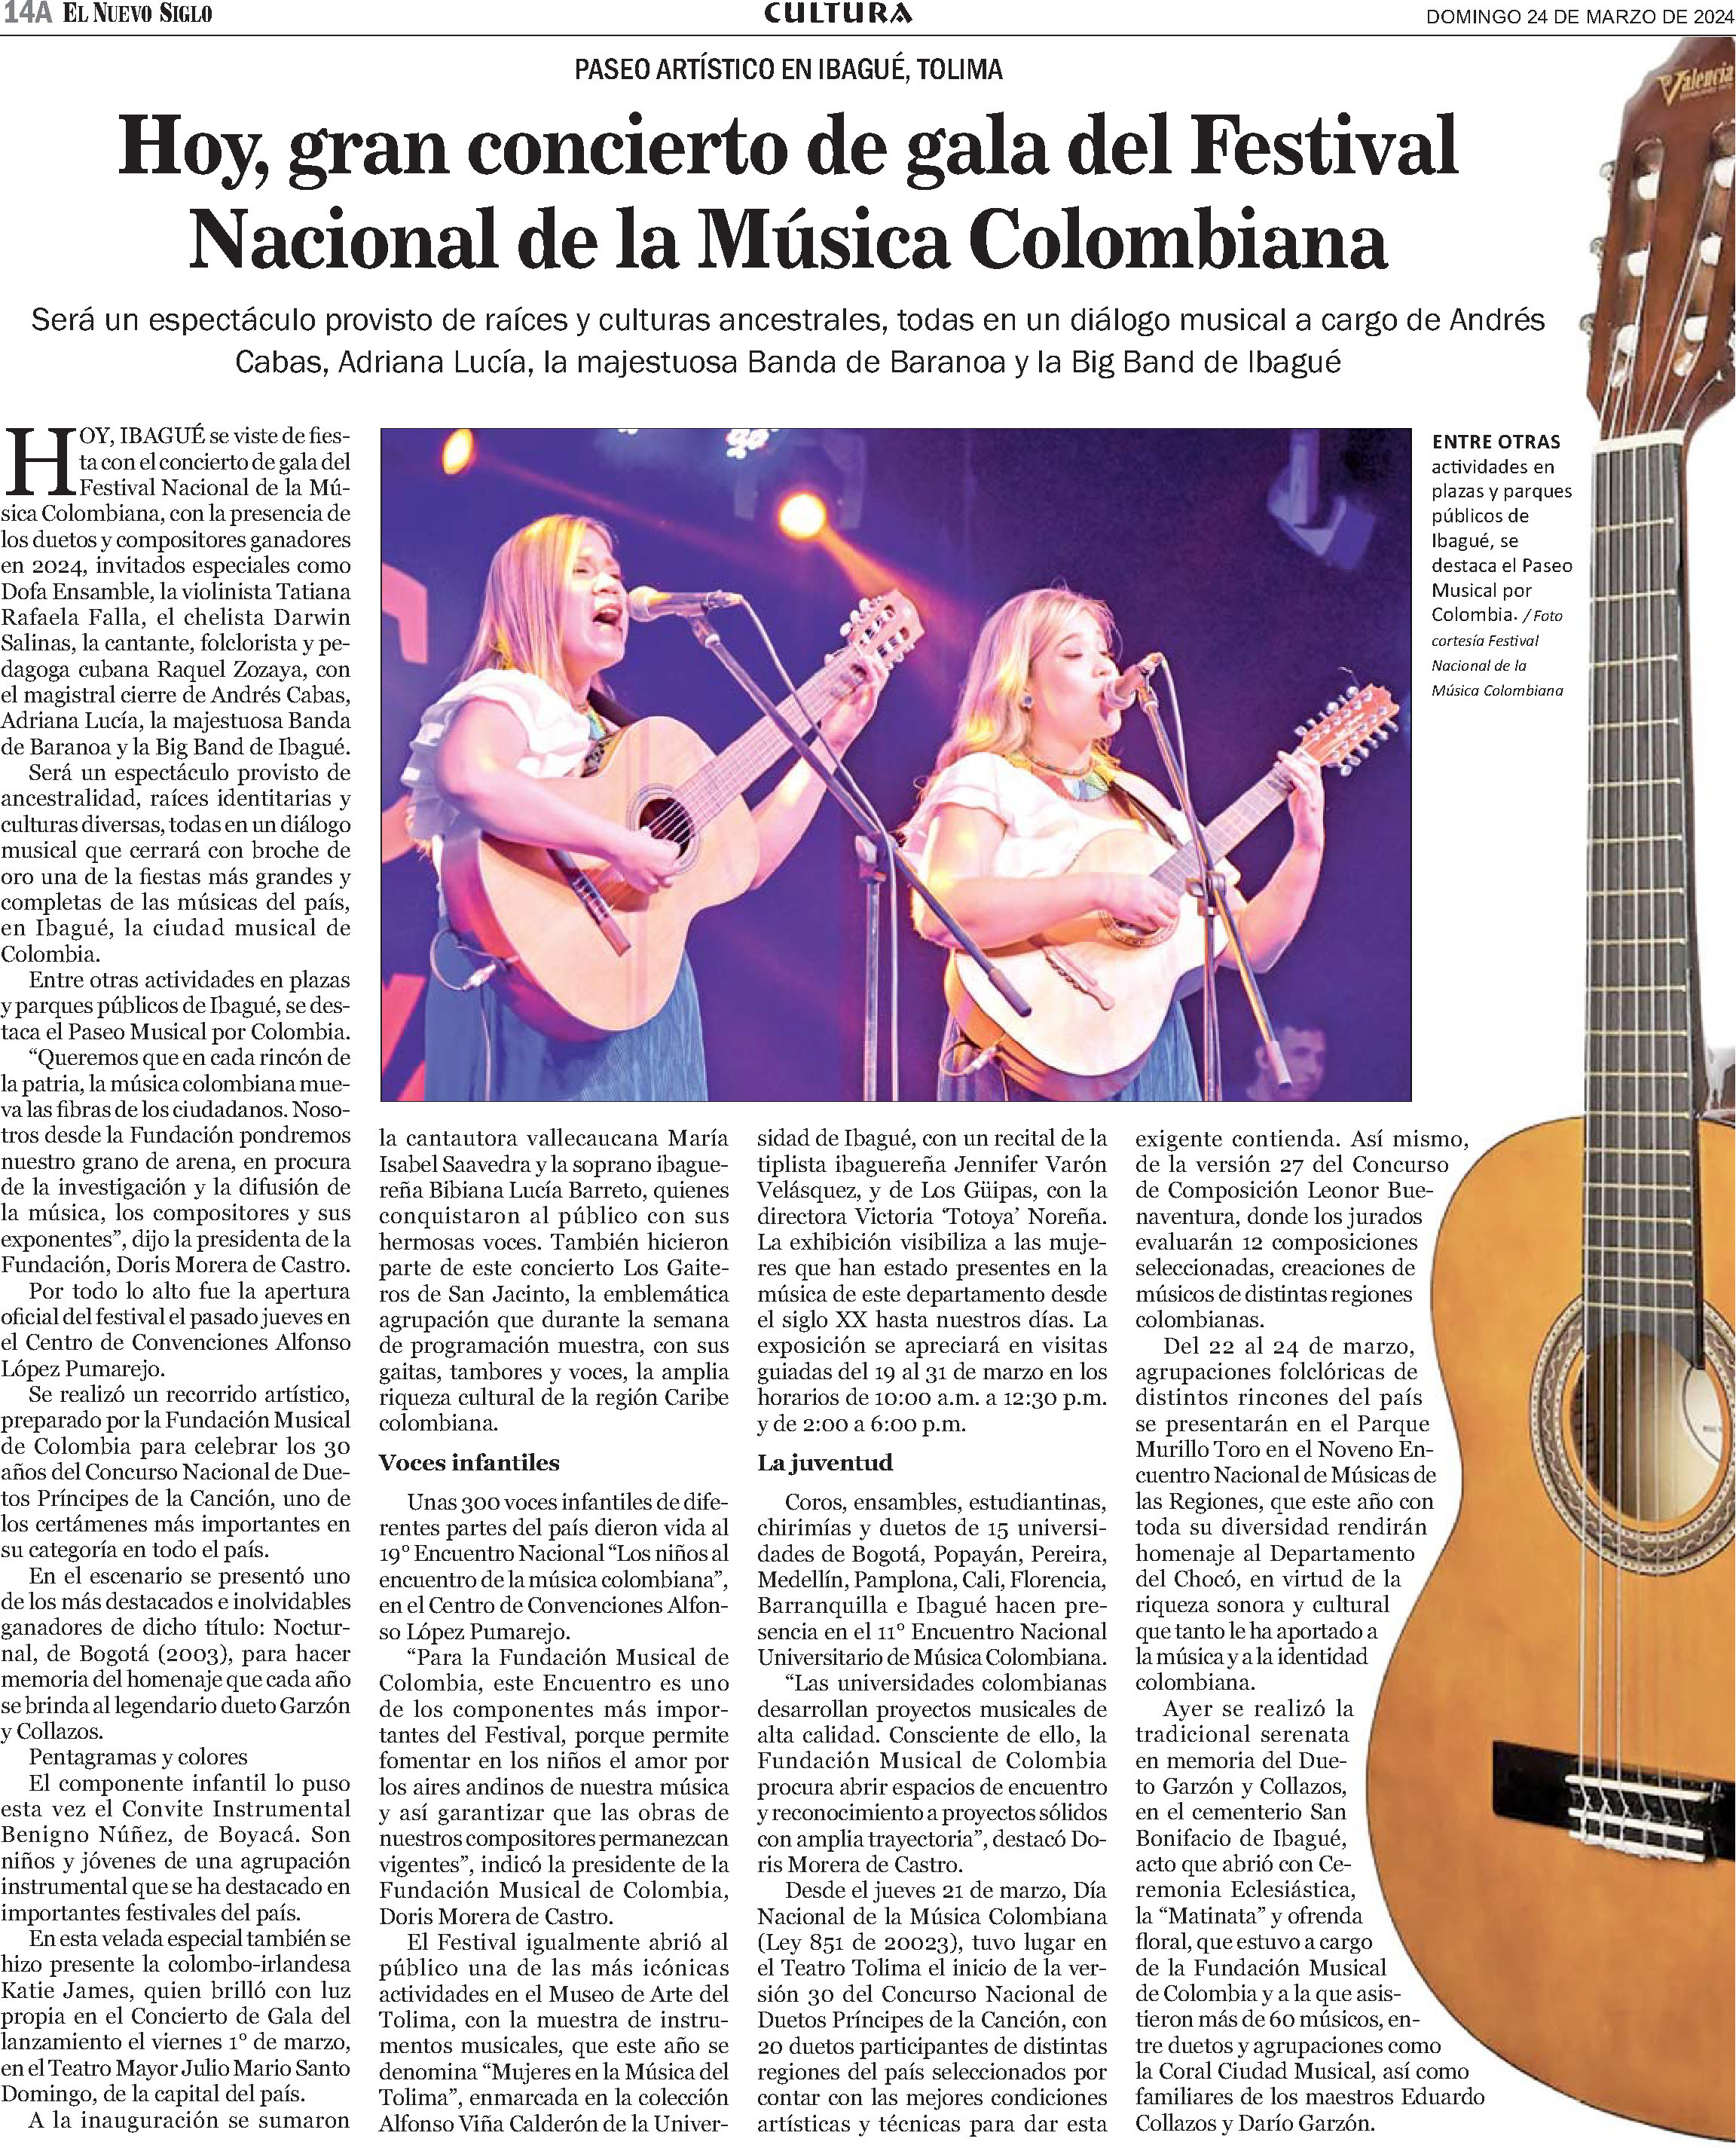 P_245-2024-03-24_Hoy--gran-concierto-de-gala-del-Festival-Nacional-de-la-Musica-Colombiana_Nuevo_Siglo_14A_34cm_x_5col_